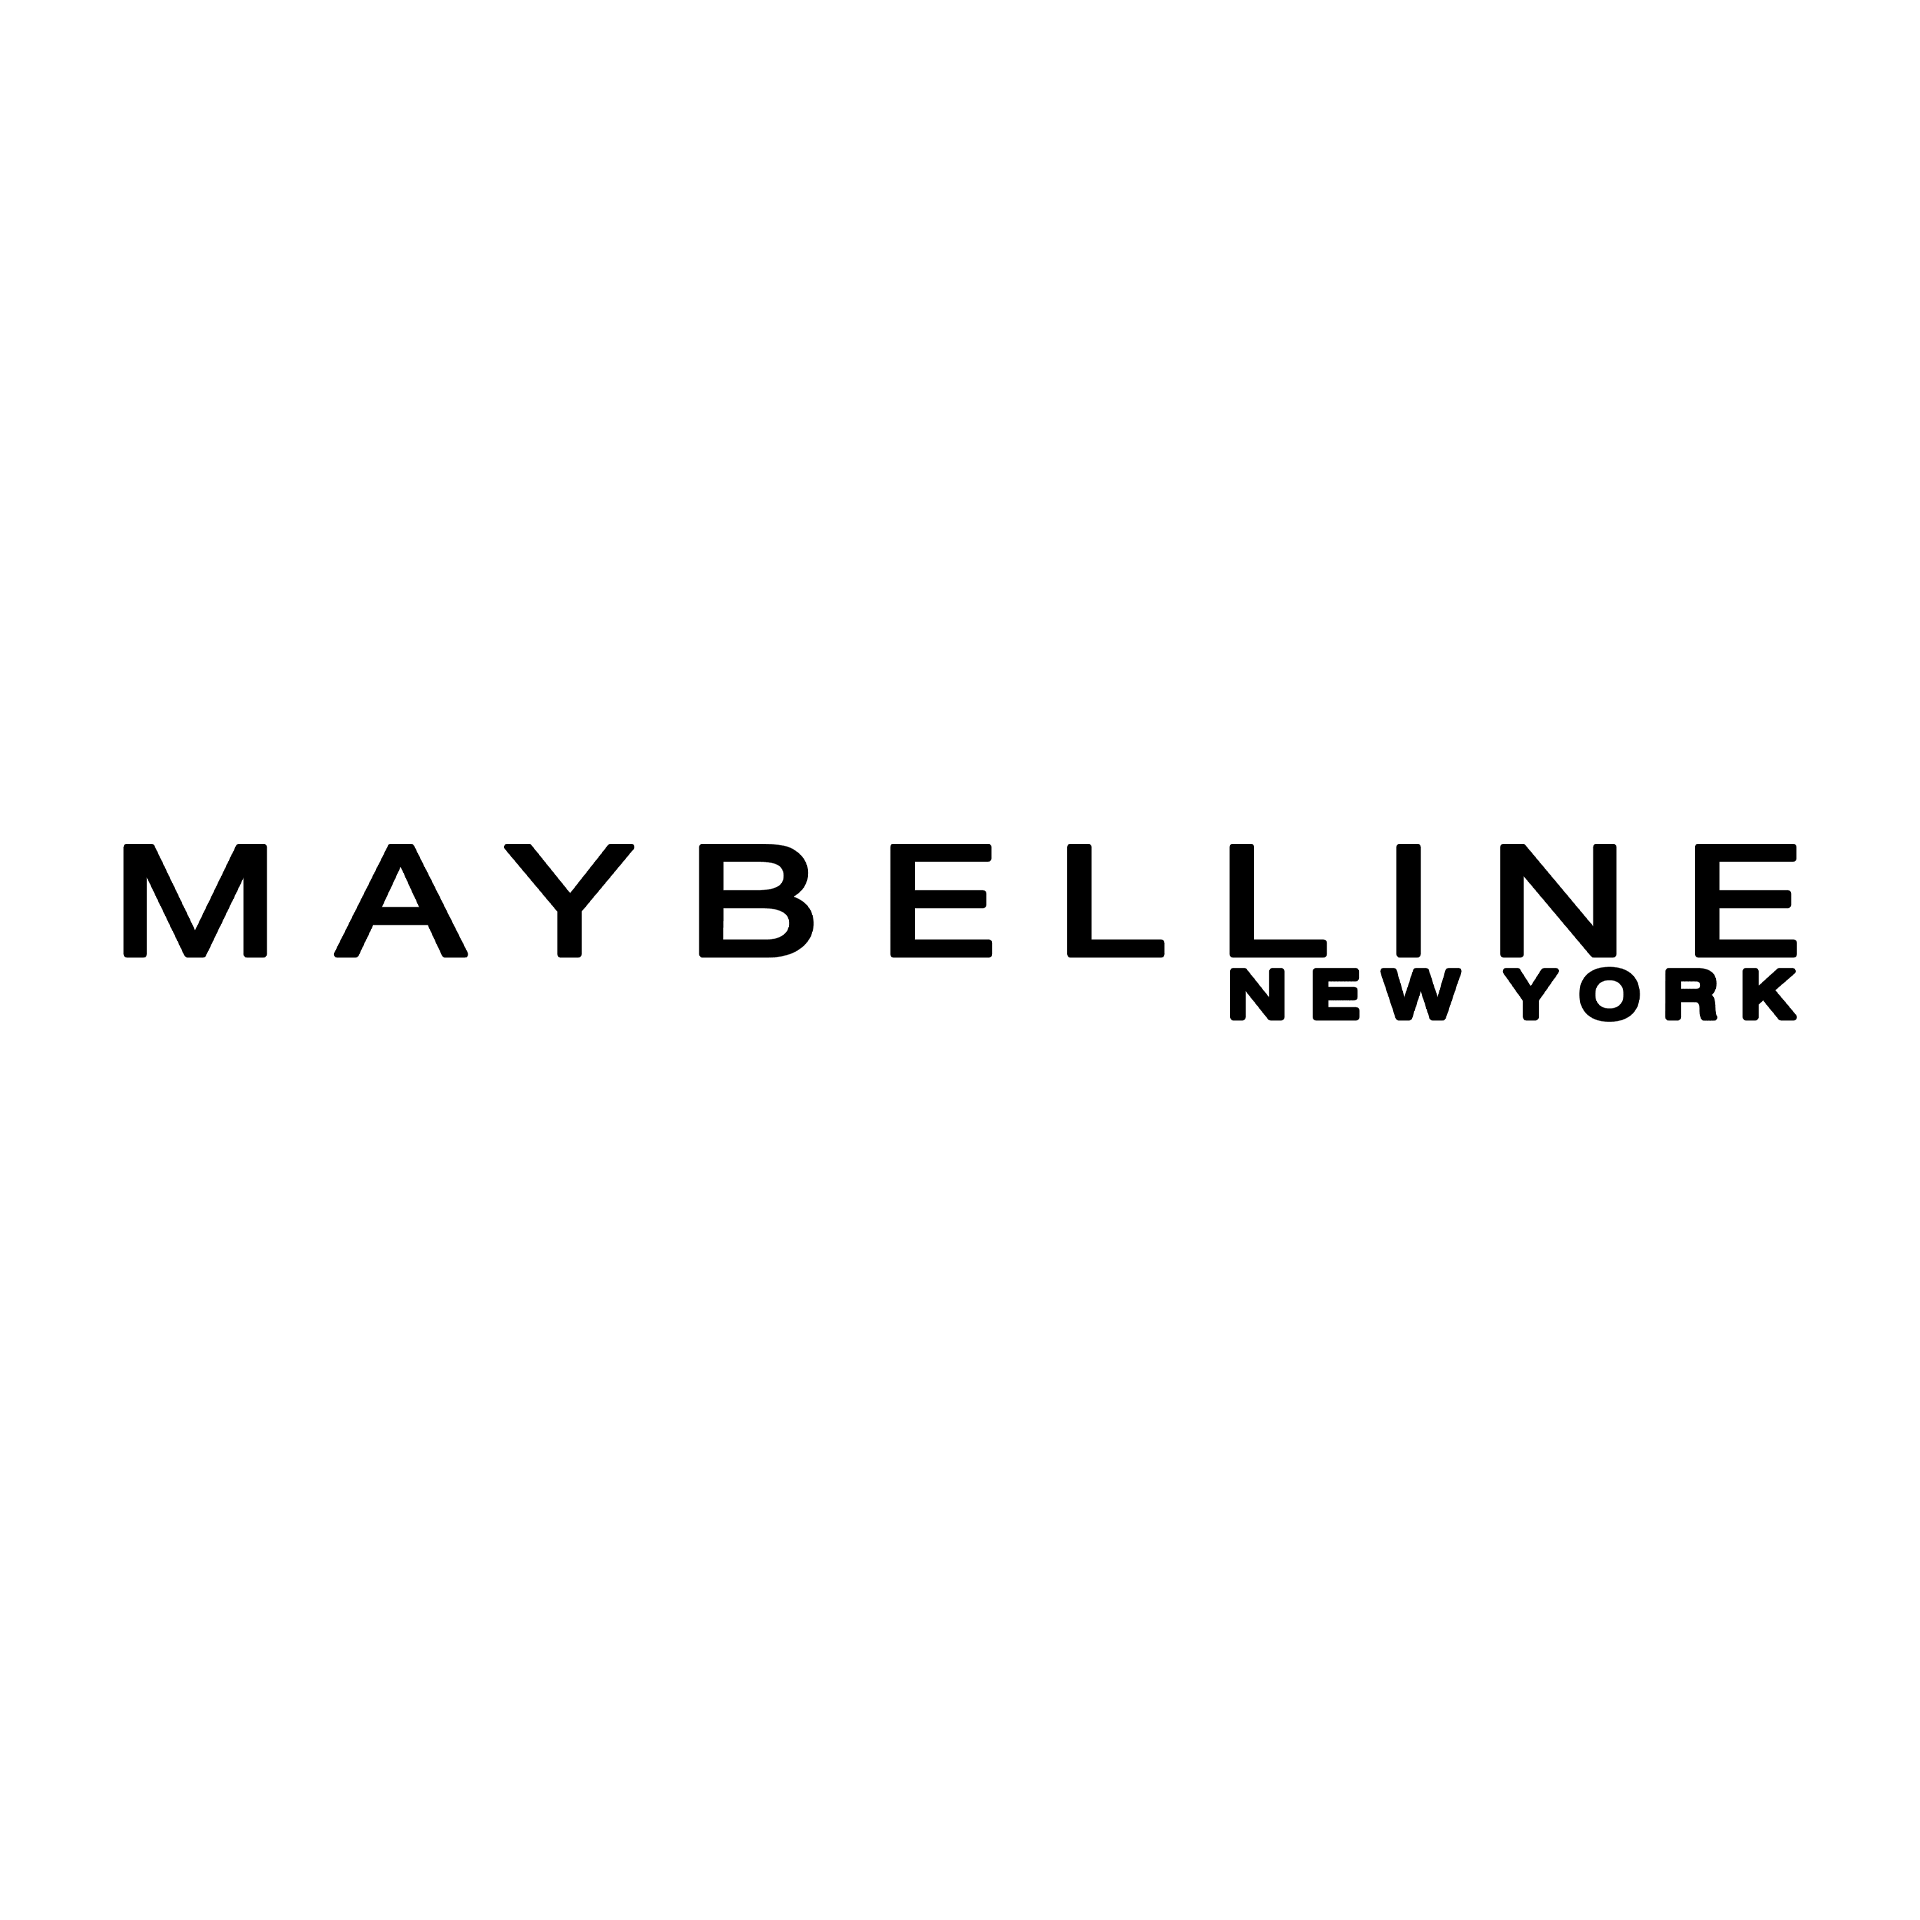 maybeline logo